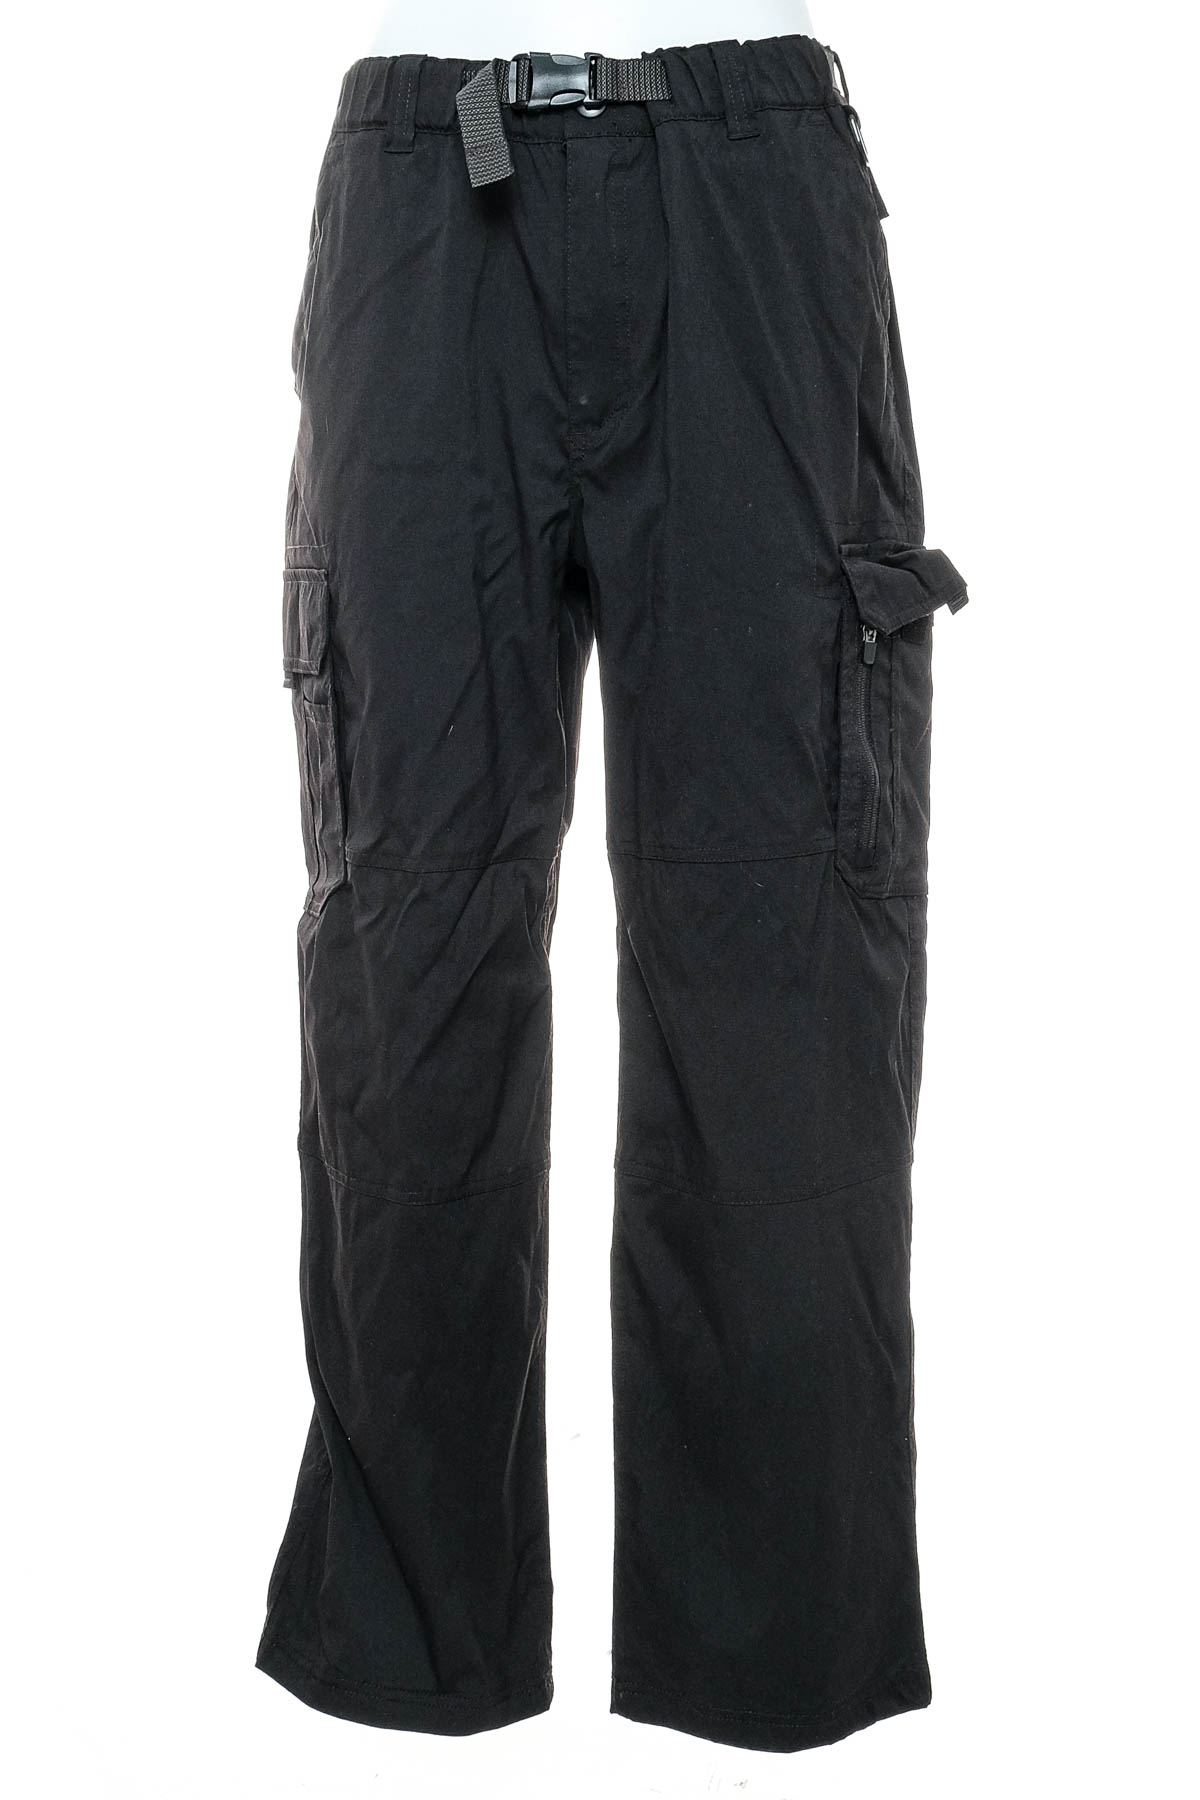 Ανδρικά παντελόνια - BC CLOTHING - 0